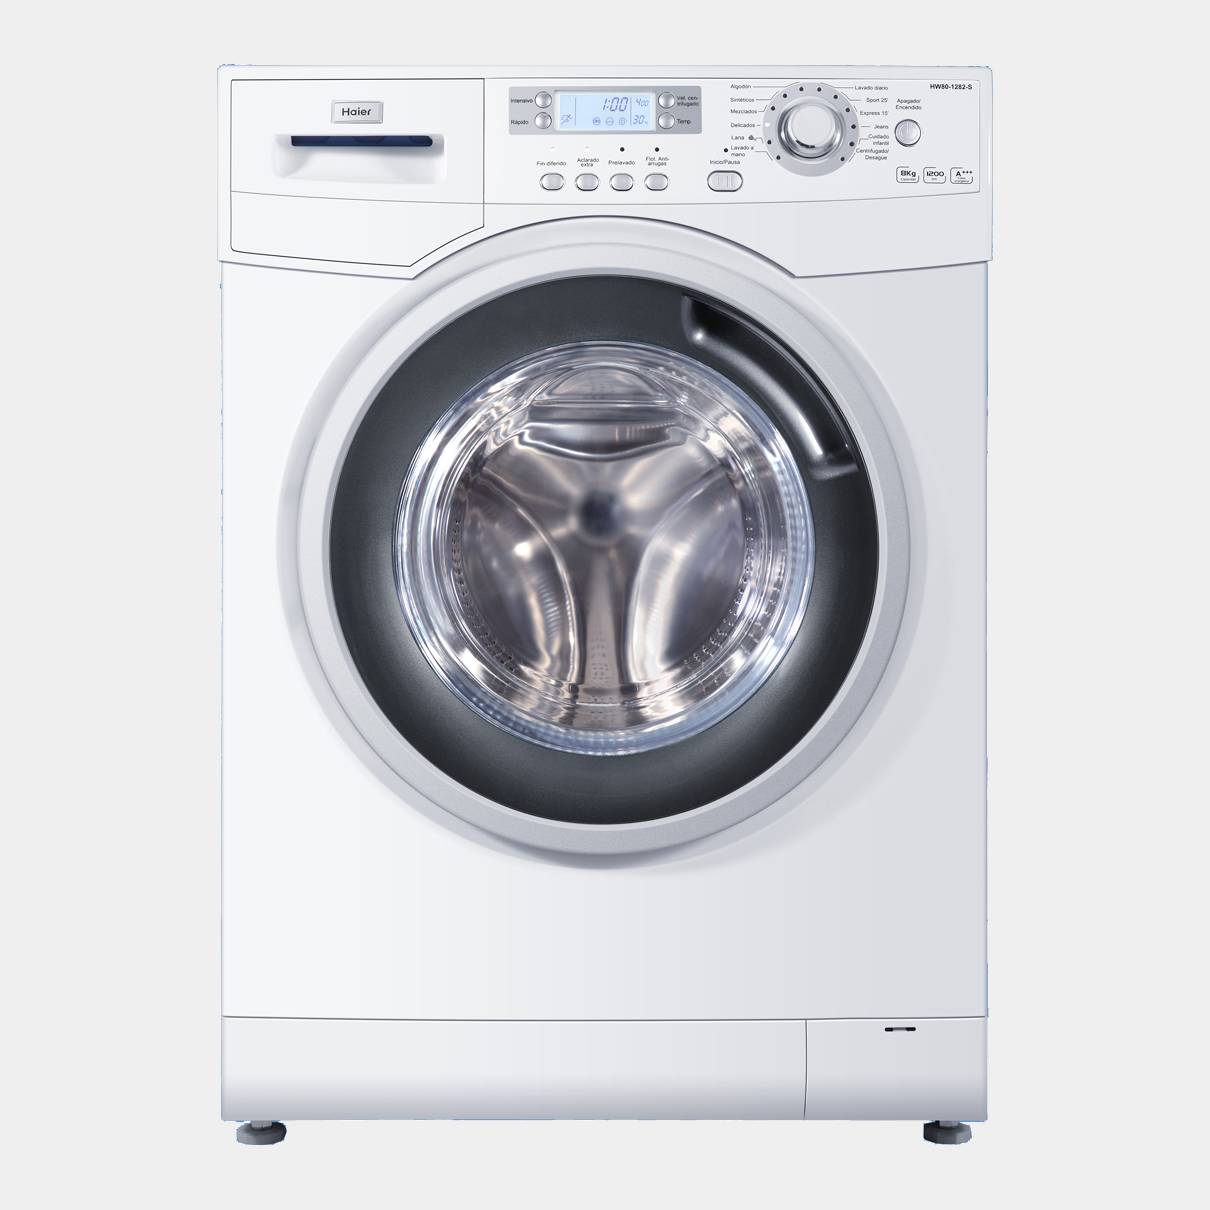 Haier Hw801282 lavadora de 8kg 1200rpm